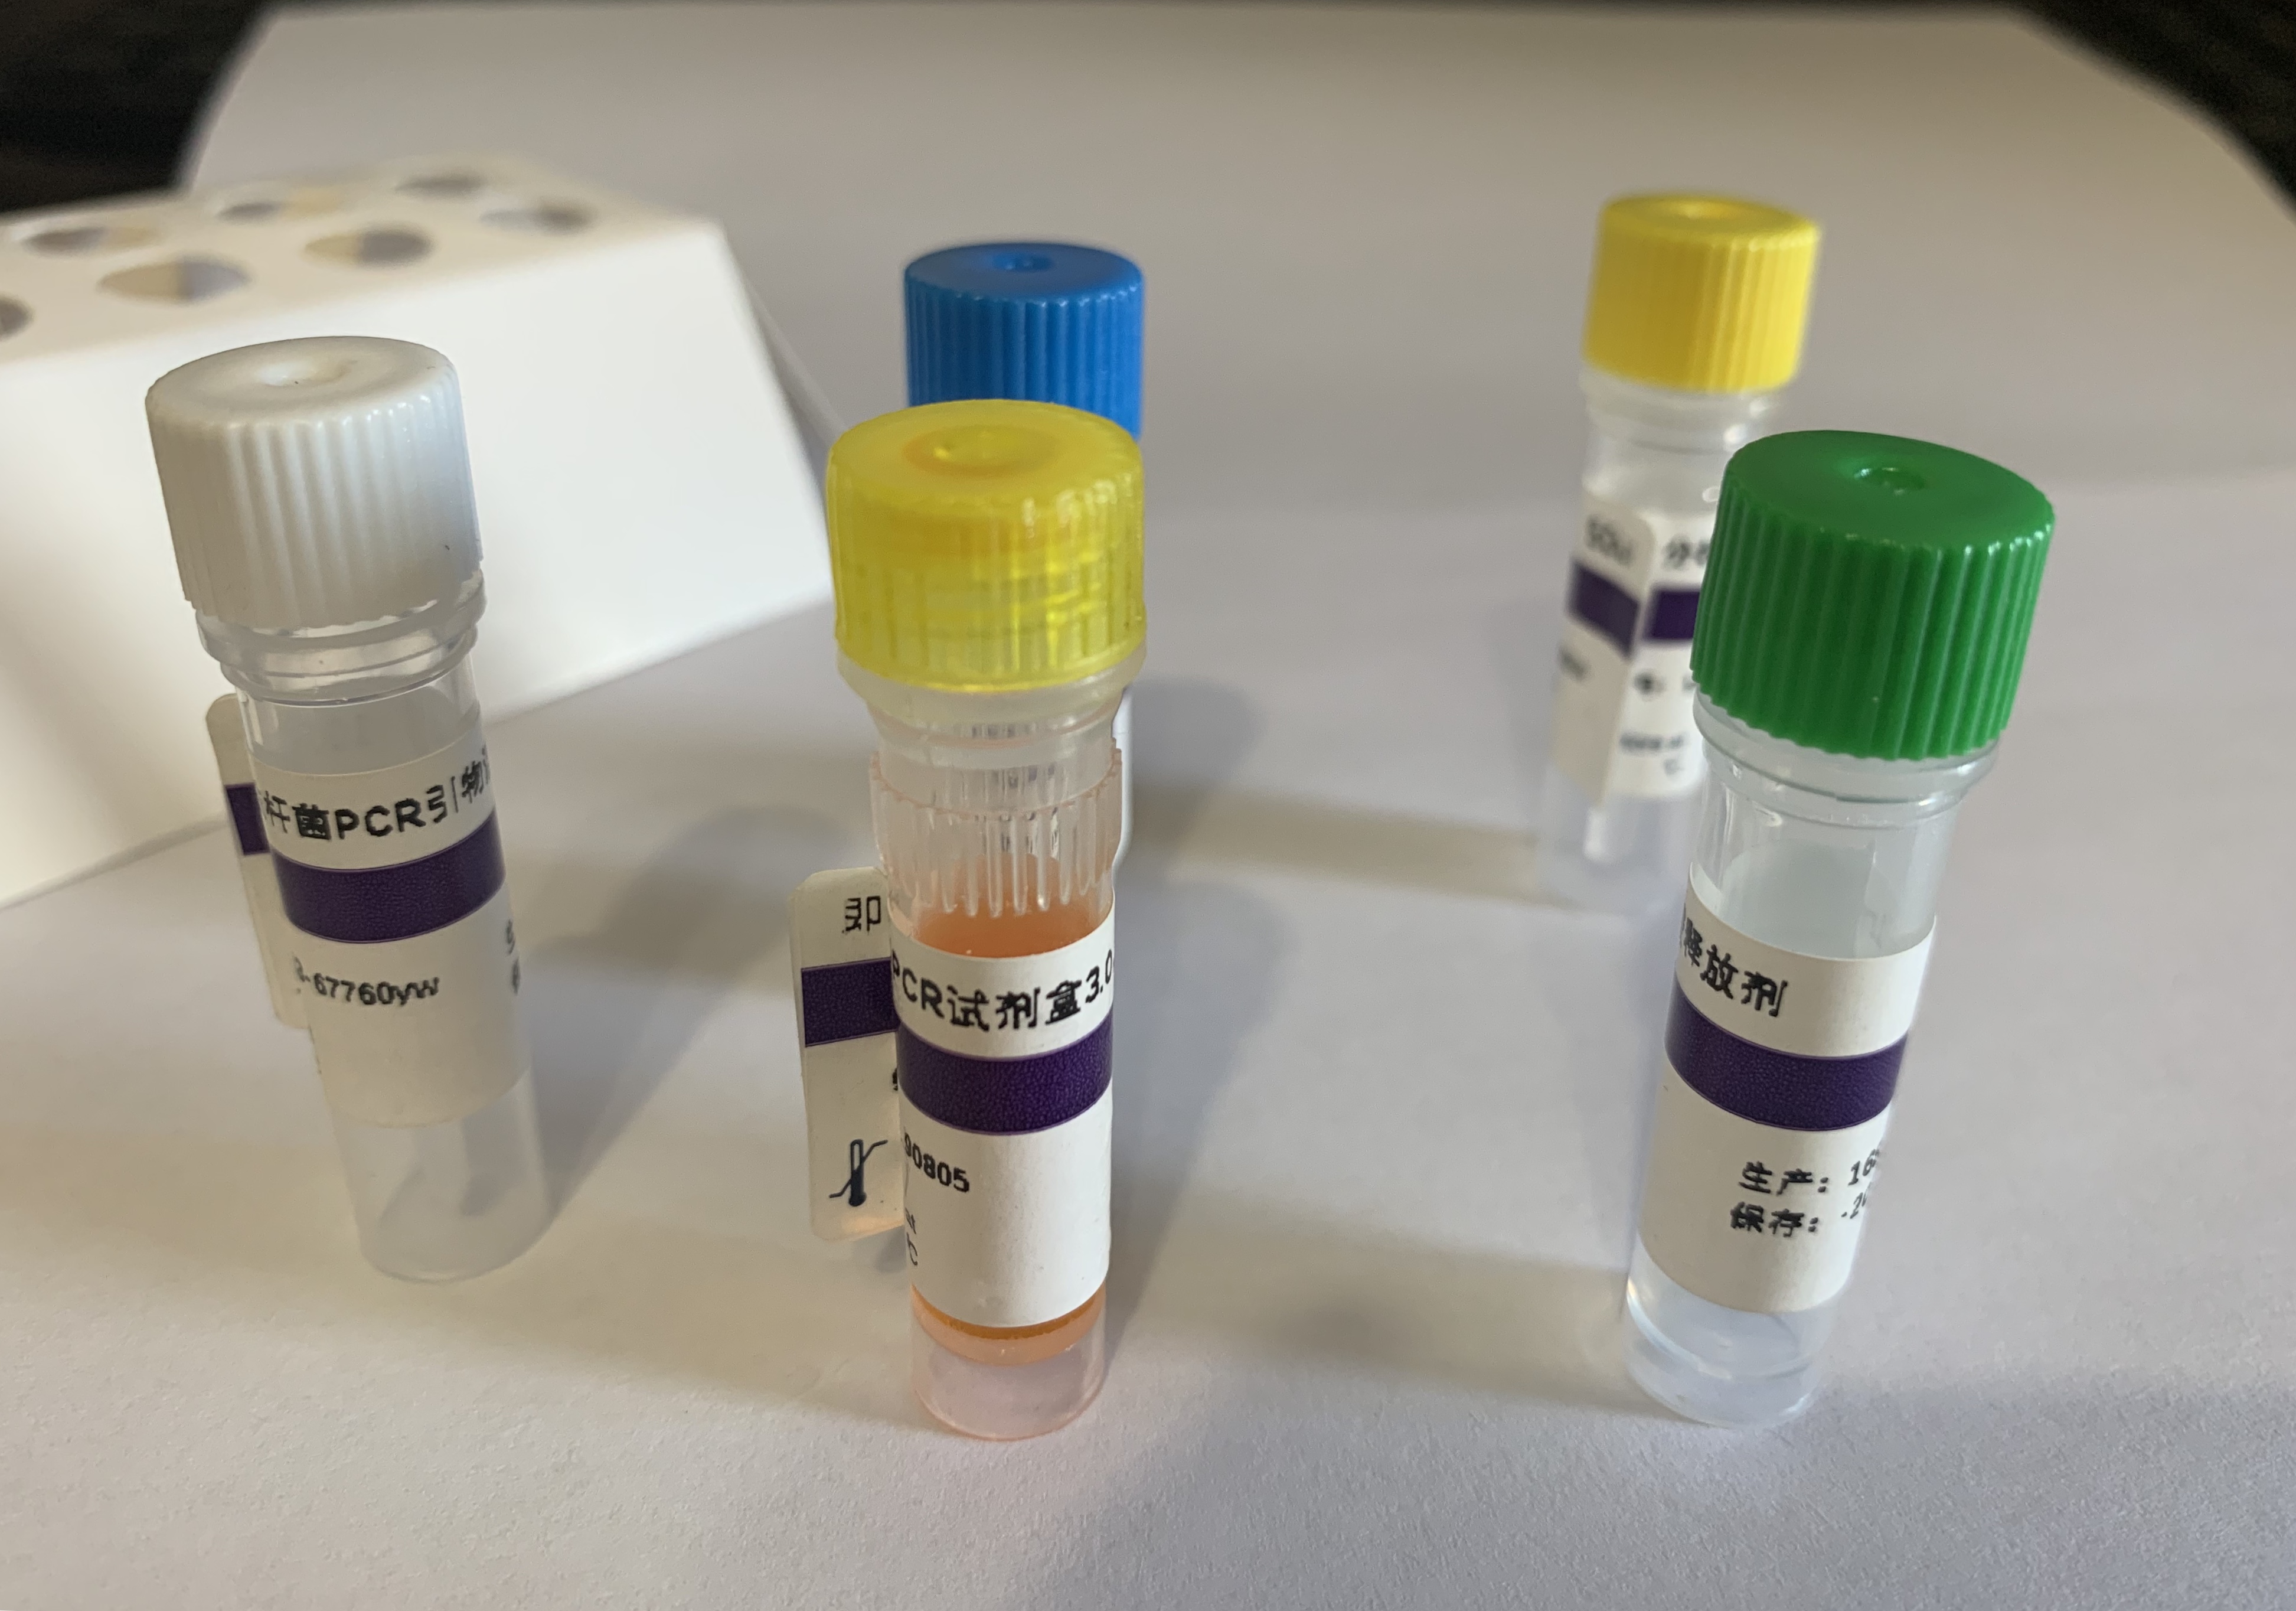 甲型流感（禽流感）病毒N3亚型RT-PCR试剂盒